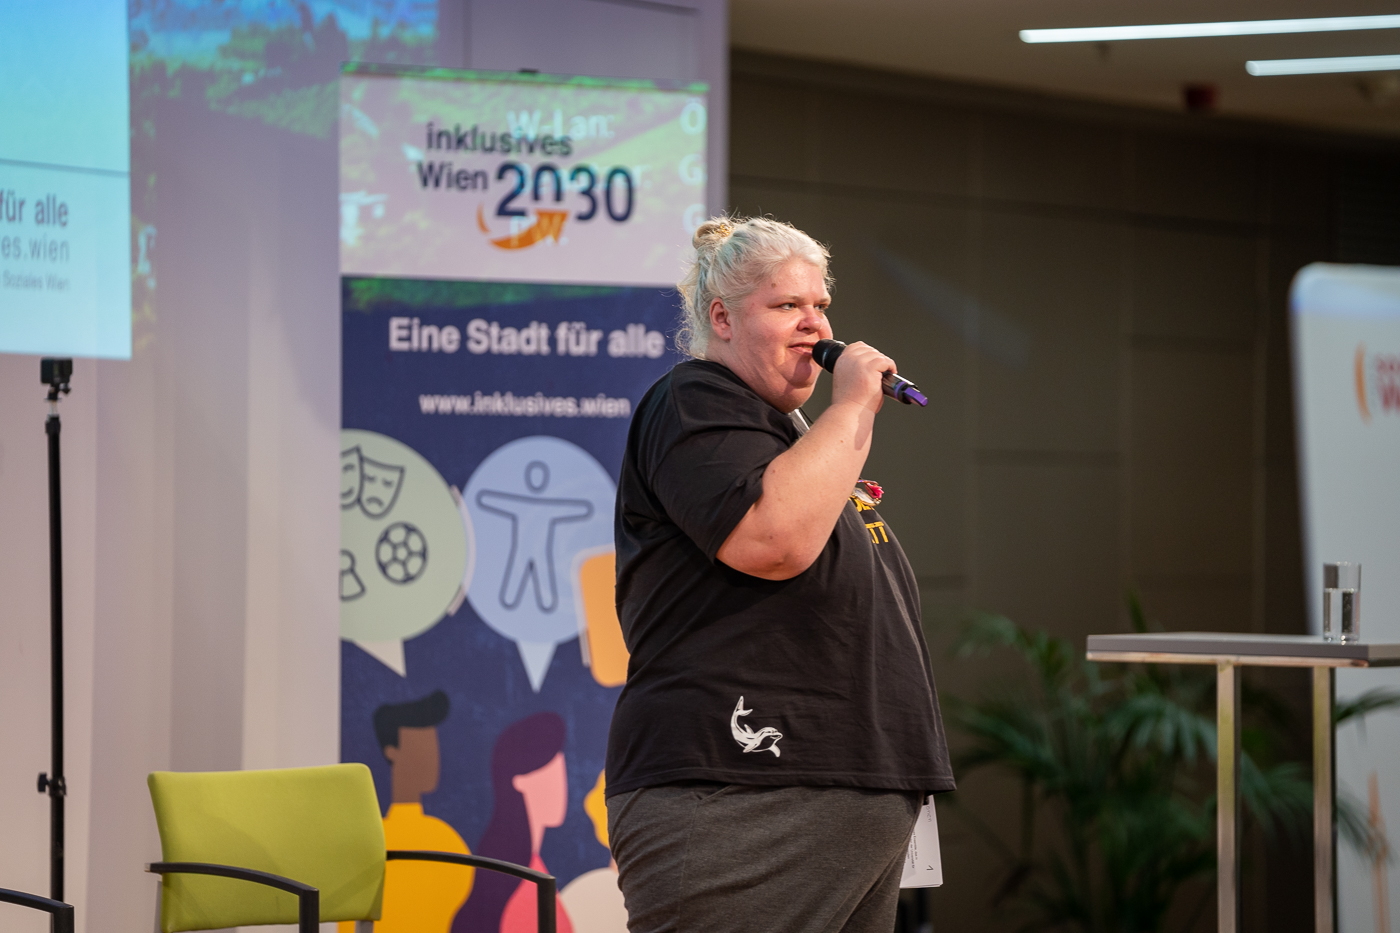 Moderatorin Iris Kopera steht vor einem Banner von "Inklusives Wien 2030" und hält ein Mikrophon in ihrer Hand.